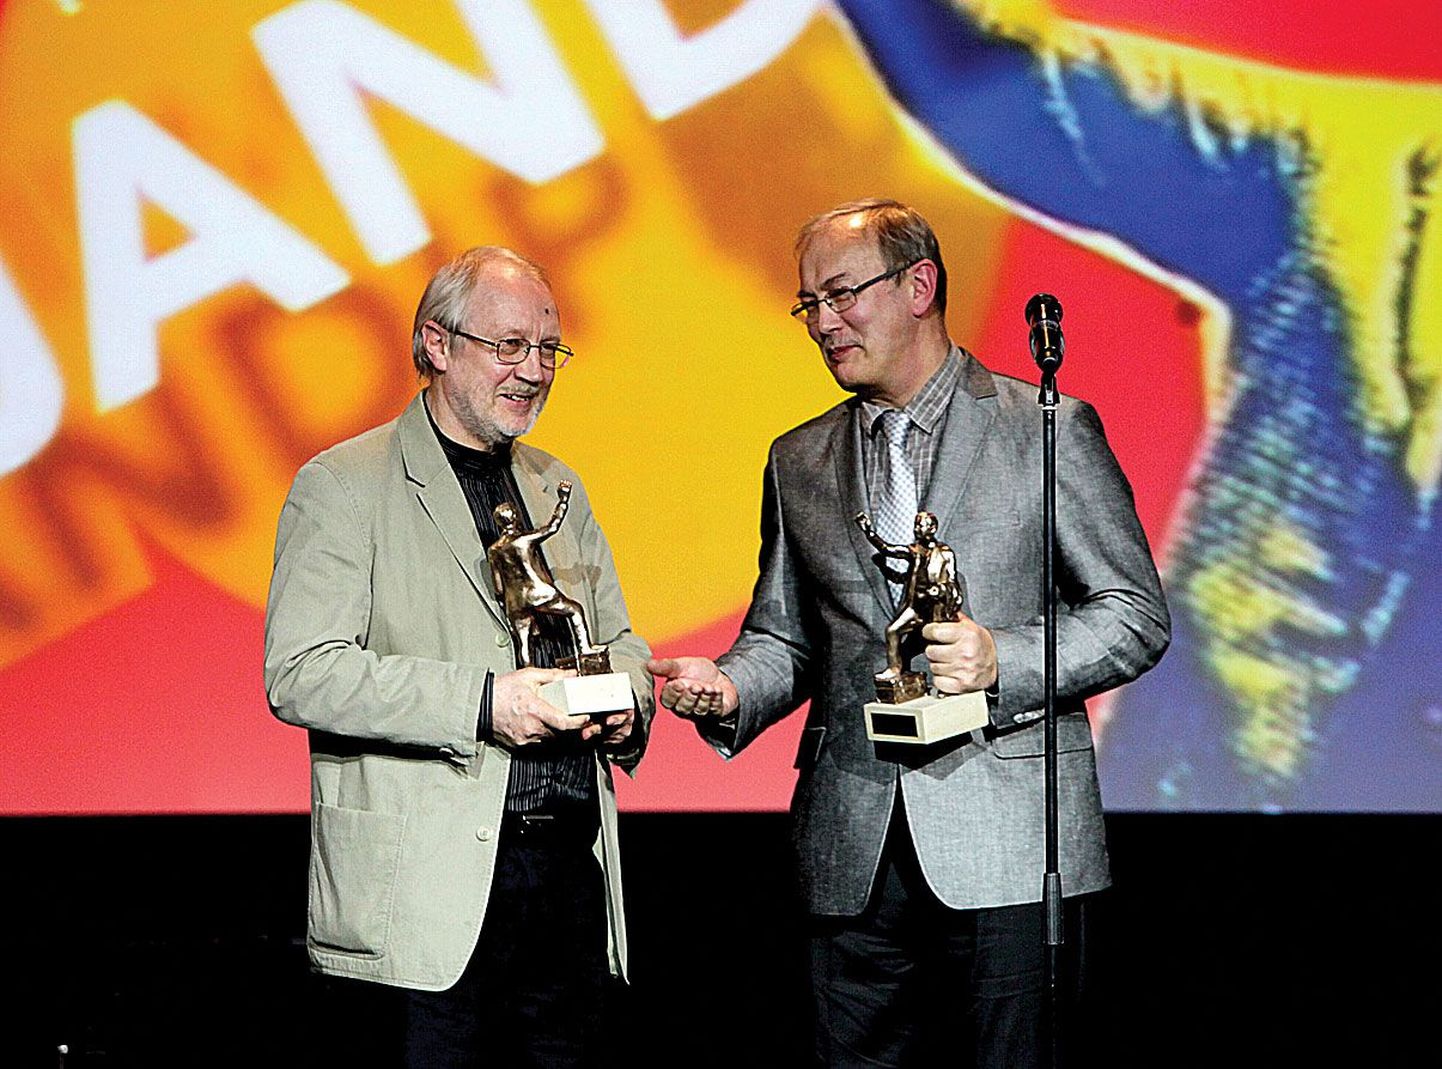 Eesti filmi 100. sünnipäeva galal aprilli lõpus kuulutati Eesti filmi 
sajandi animafilmitegelaseks Lotte. Auhinda võtavad vastu Heiki Ernits (paremal) ja Janno Põldma.